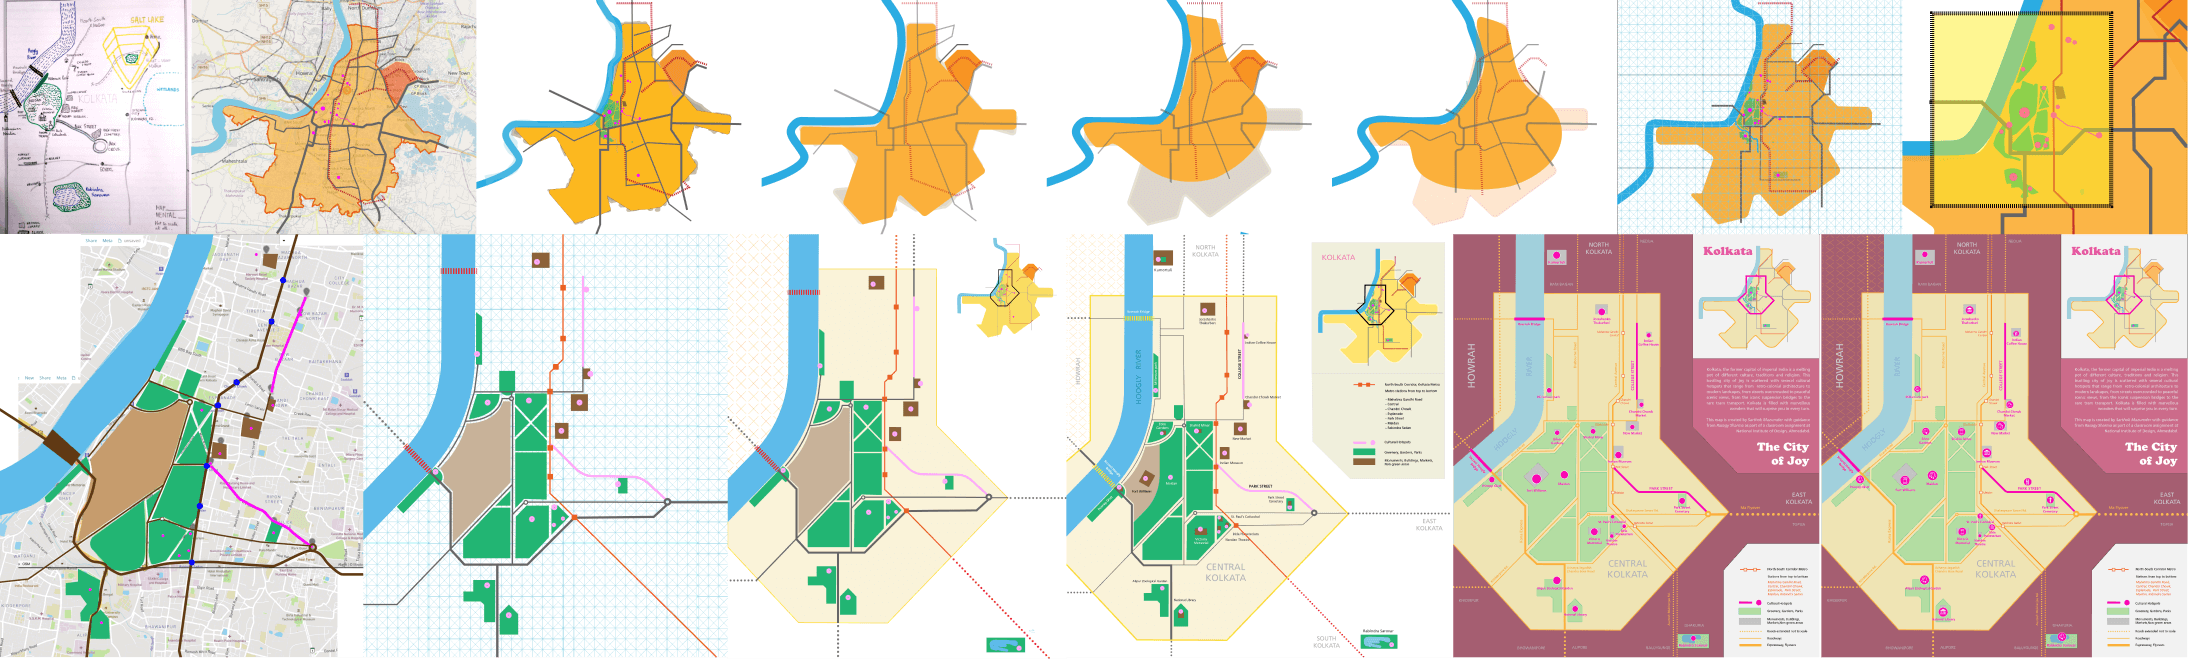 Process of Schematic map of Kolkata by Sarthok Mazumder